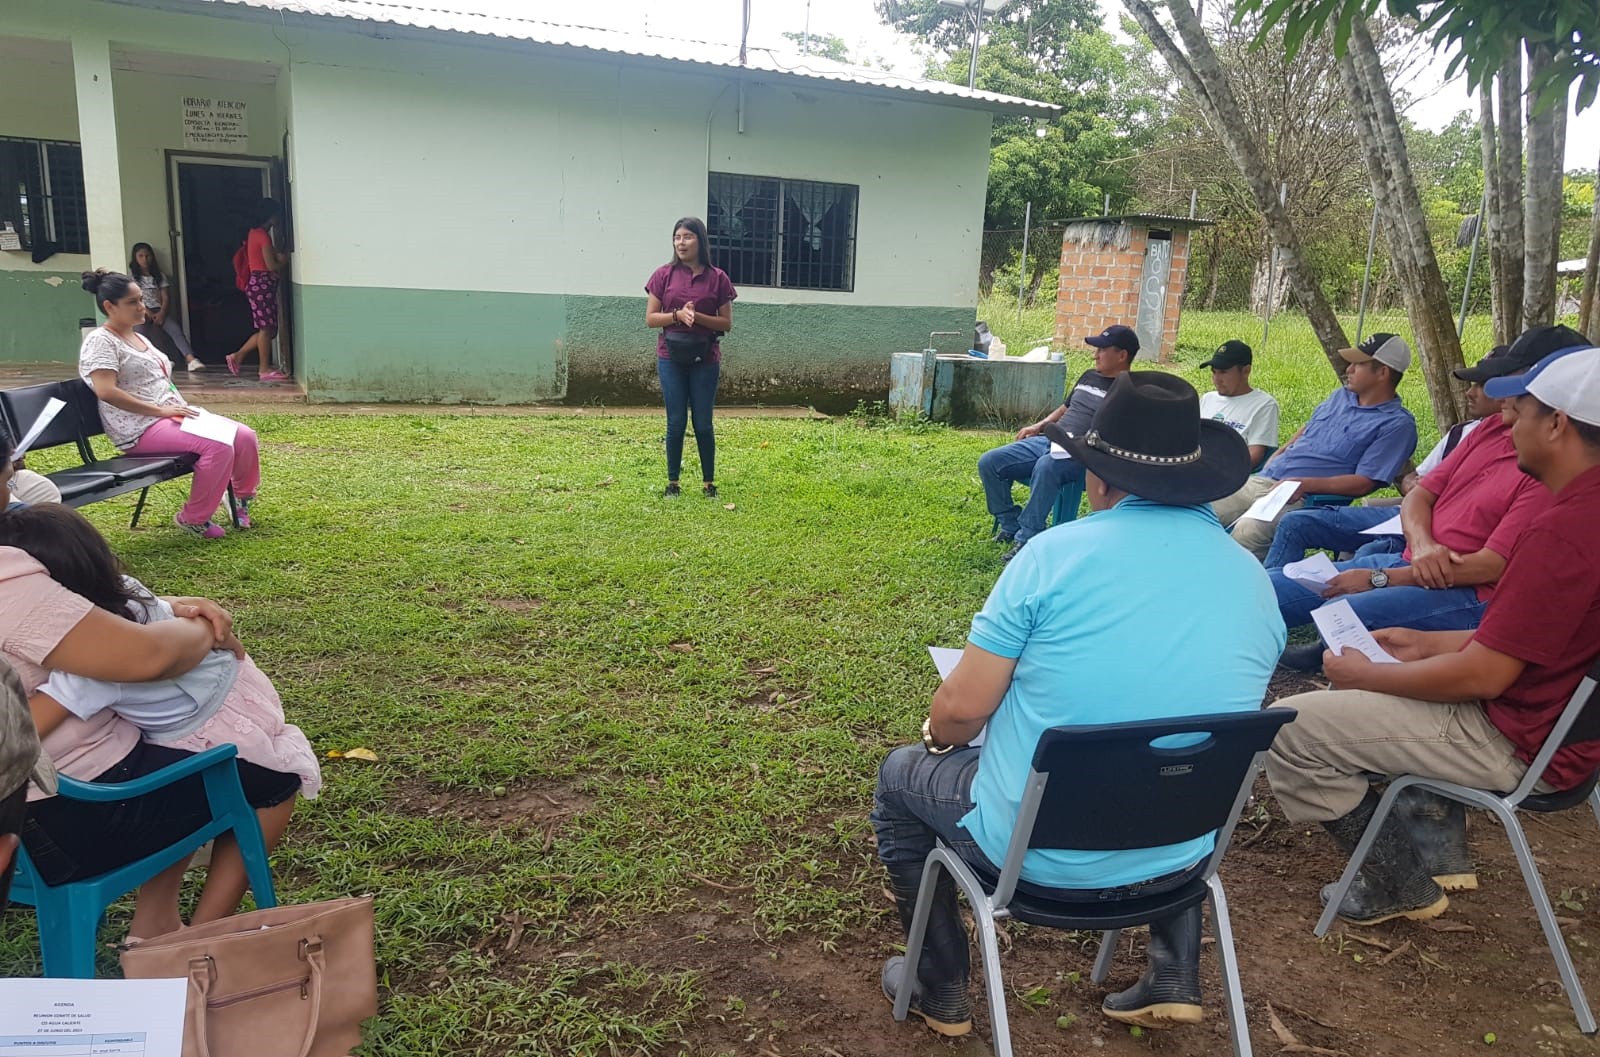 Estudiante de UCENM: Kelin Hernández realiza exitosamente práctica profesional de Salud Comunitaria en Cuyamel